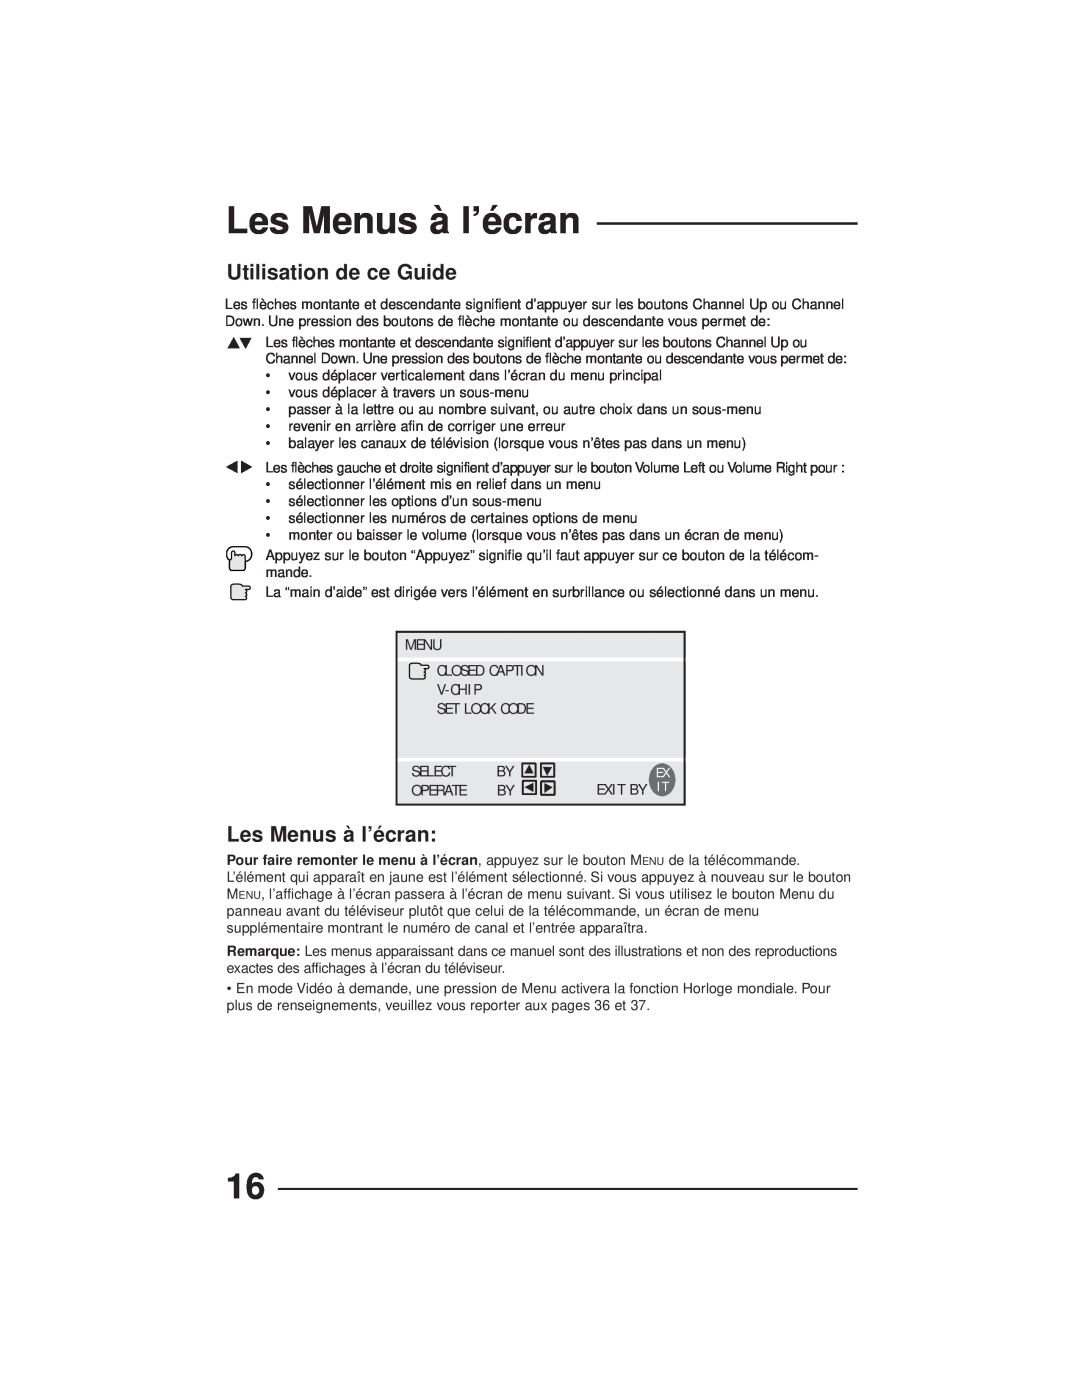 JVC AV-27GFH manual Les Menus à l’écran, Utilisation de ce Guide, Menu Closed Caption V-Chip Set Lock Code, Select, Operate 